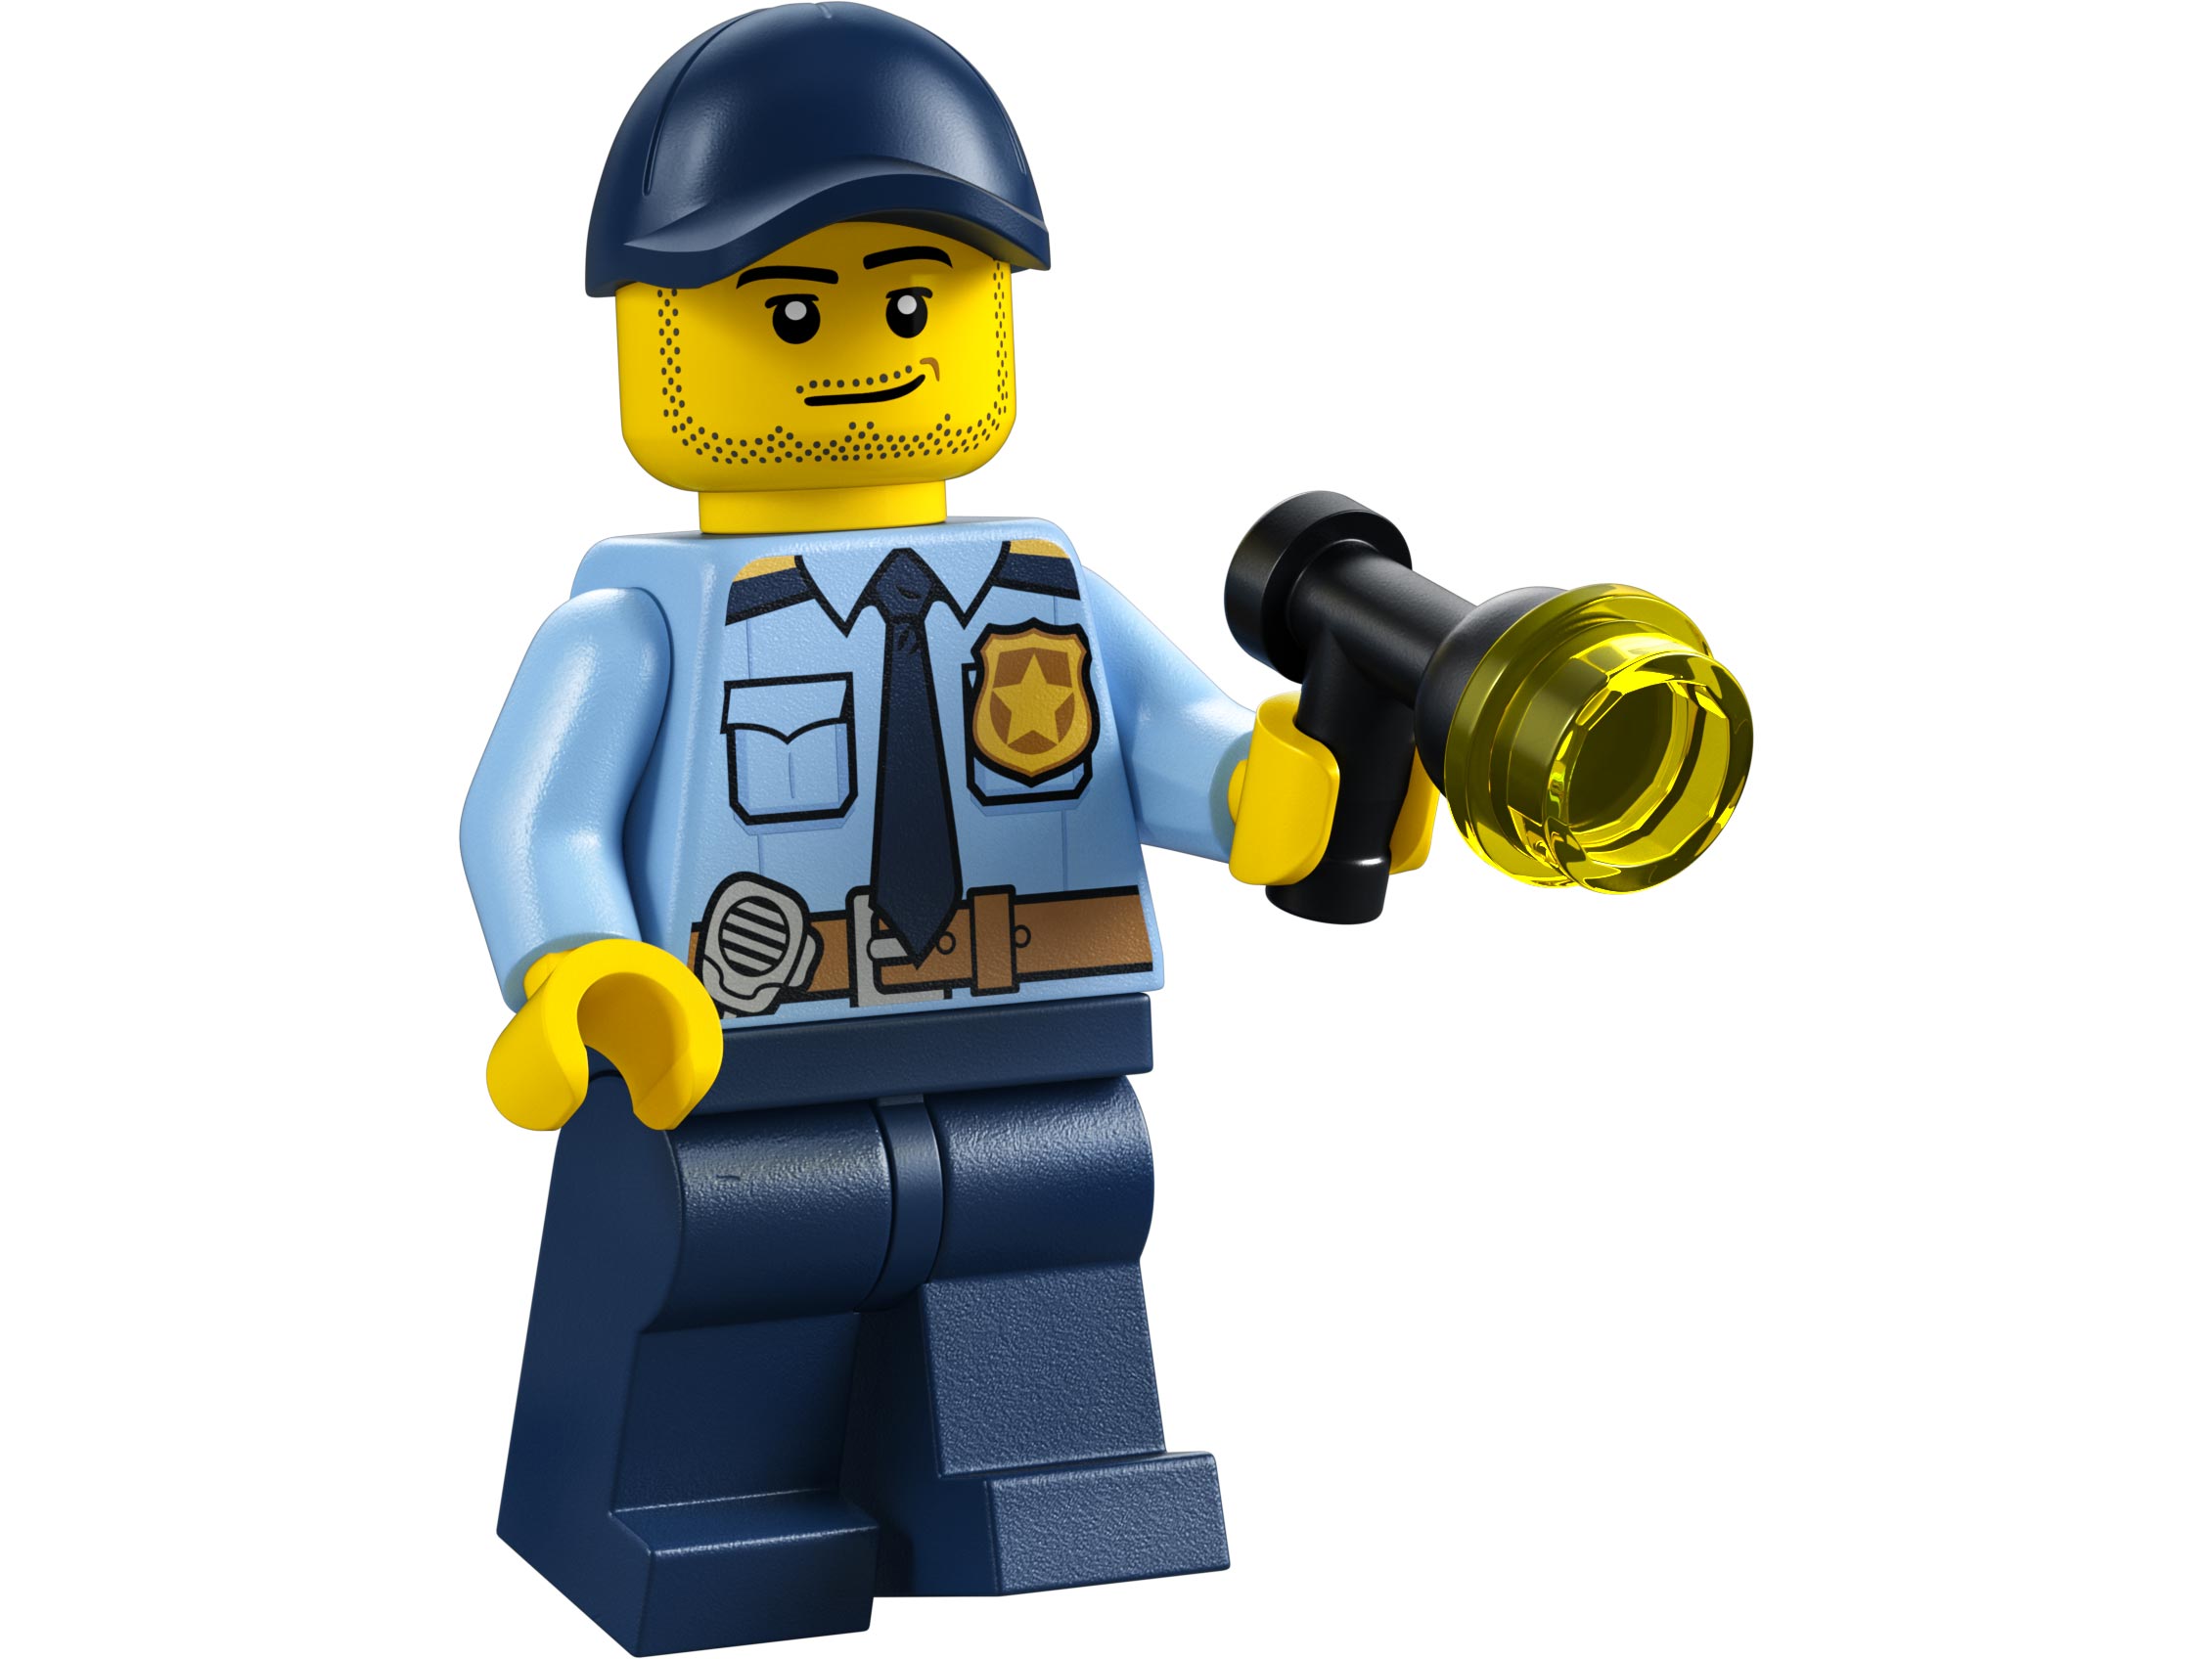 Конструктор LEGO City Police 60312 Полицейская машина